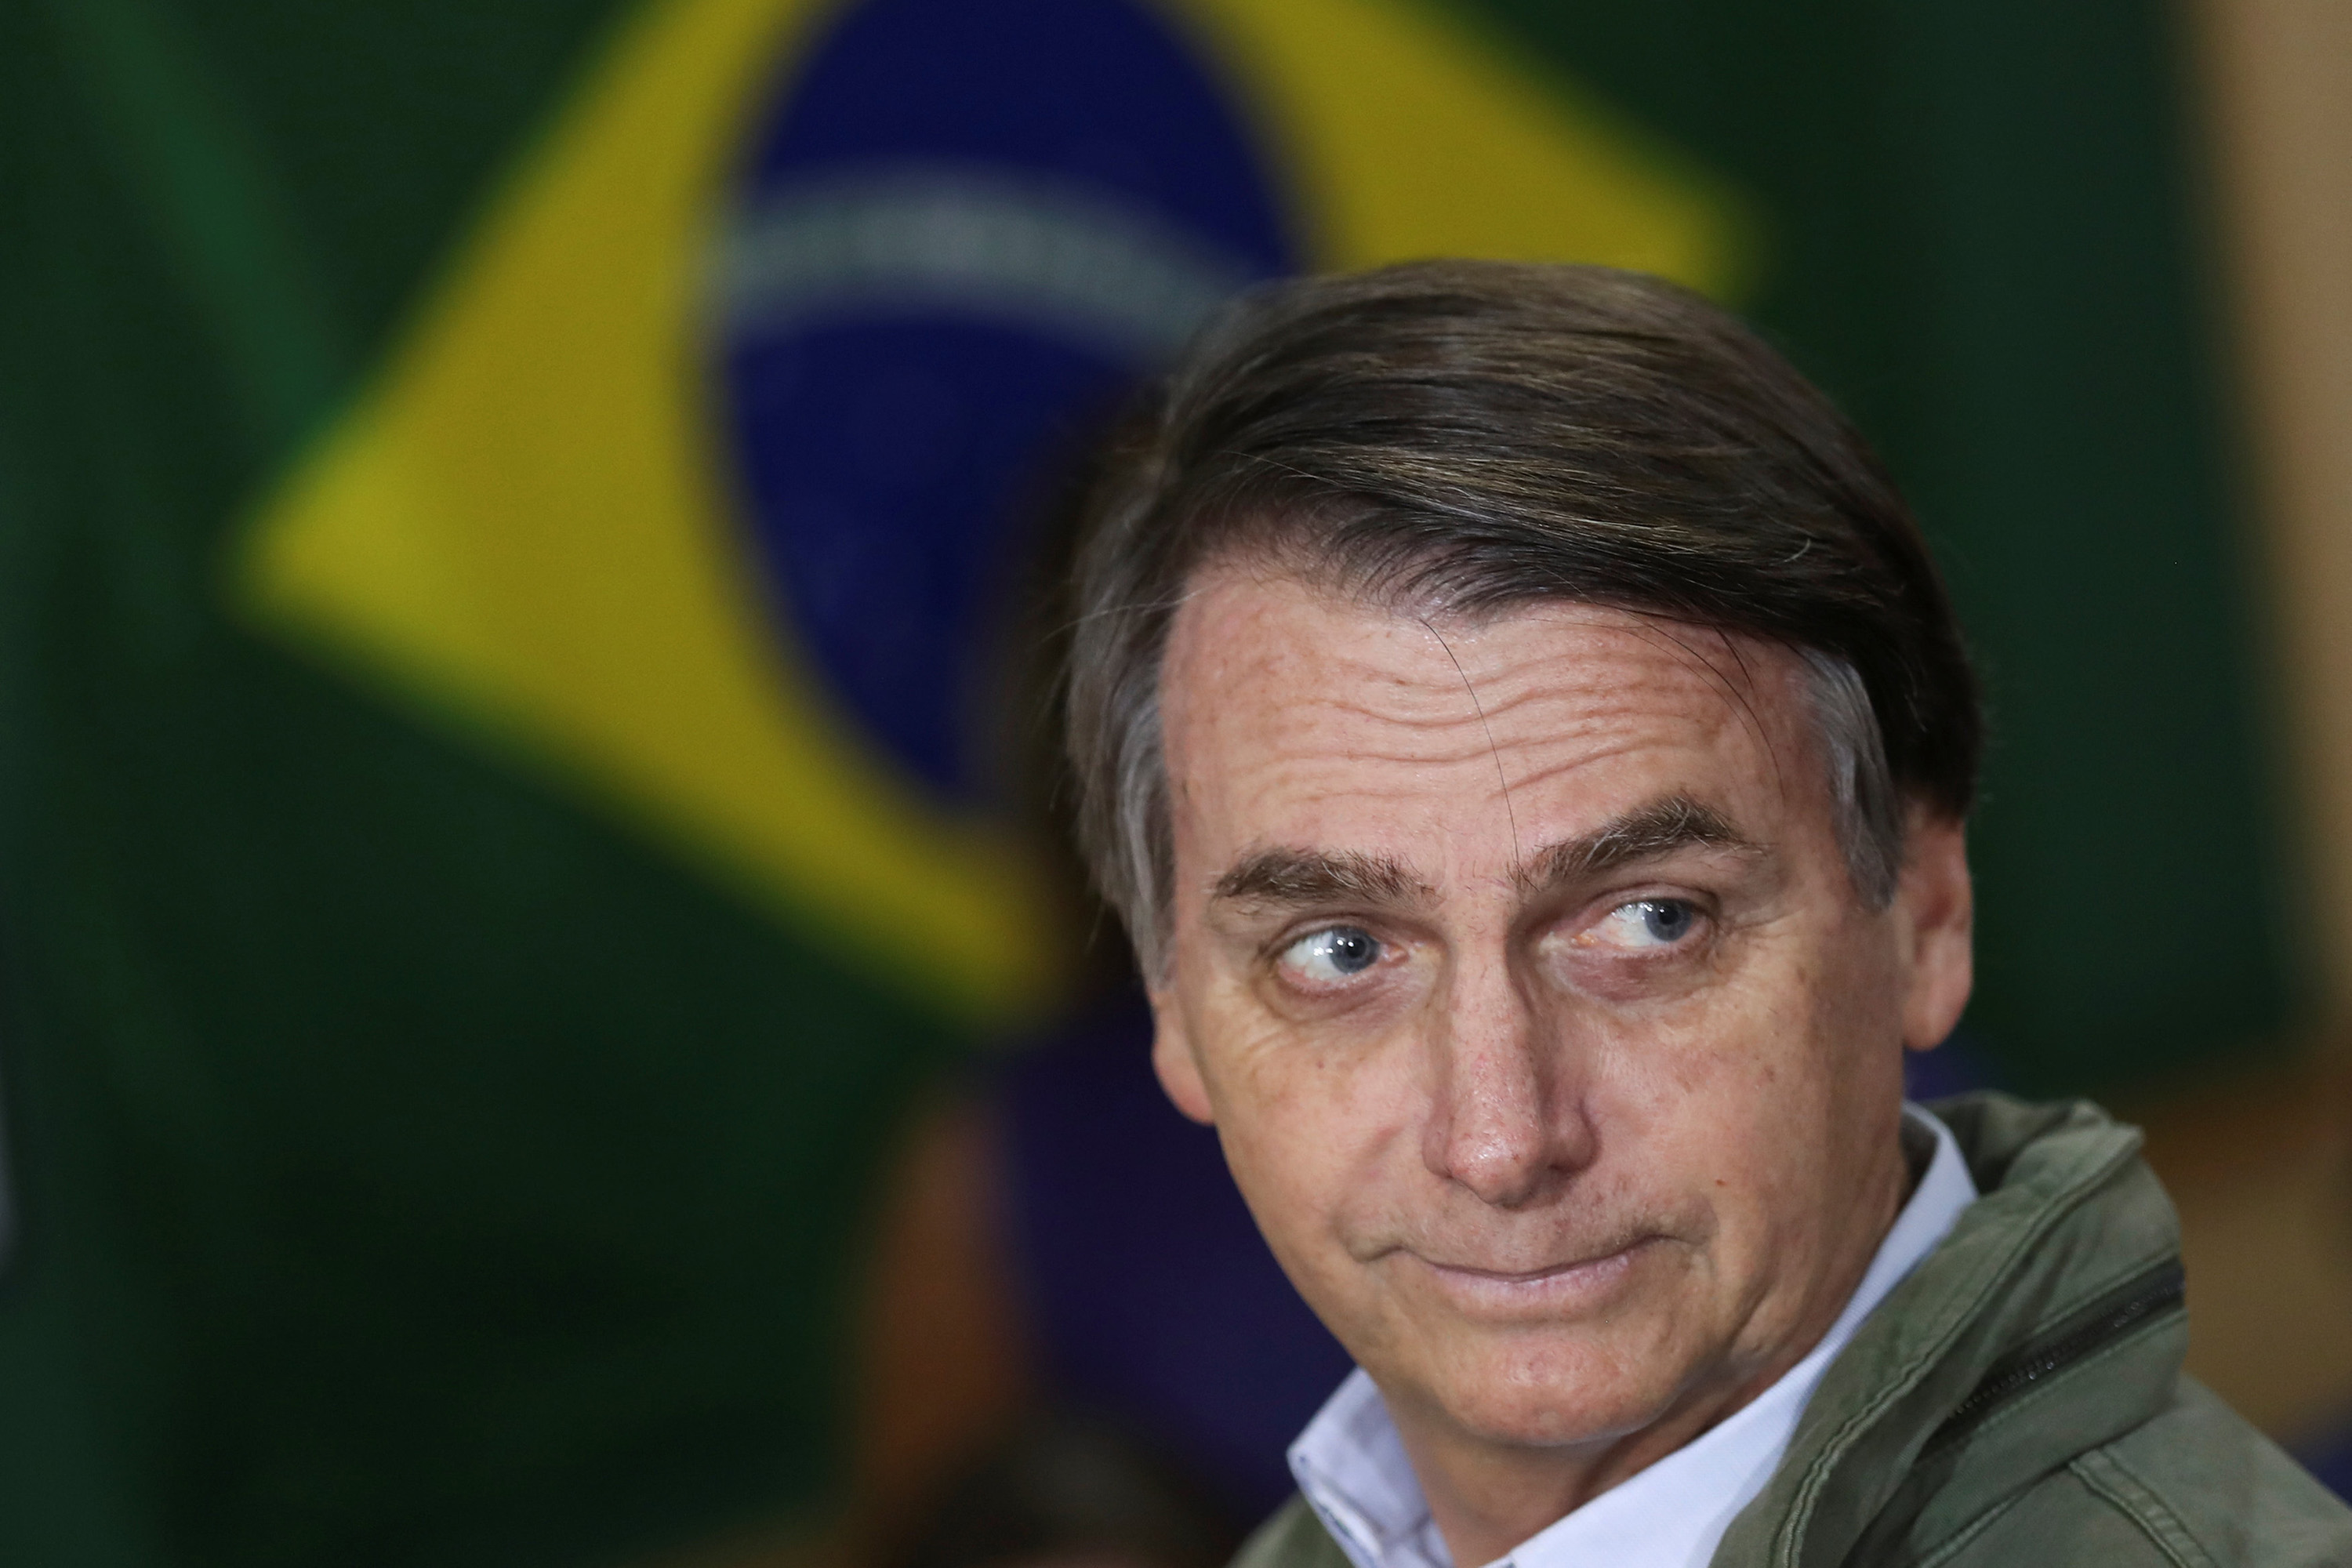 Eleito presidente, Bolsonaro perde imunidade que o livrou de processos